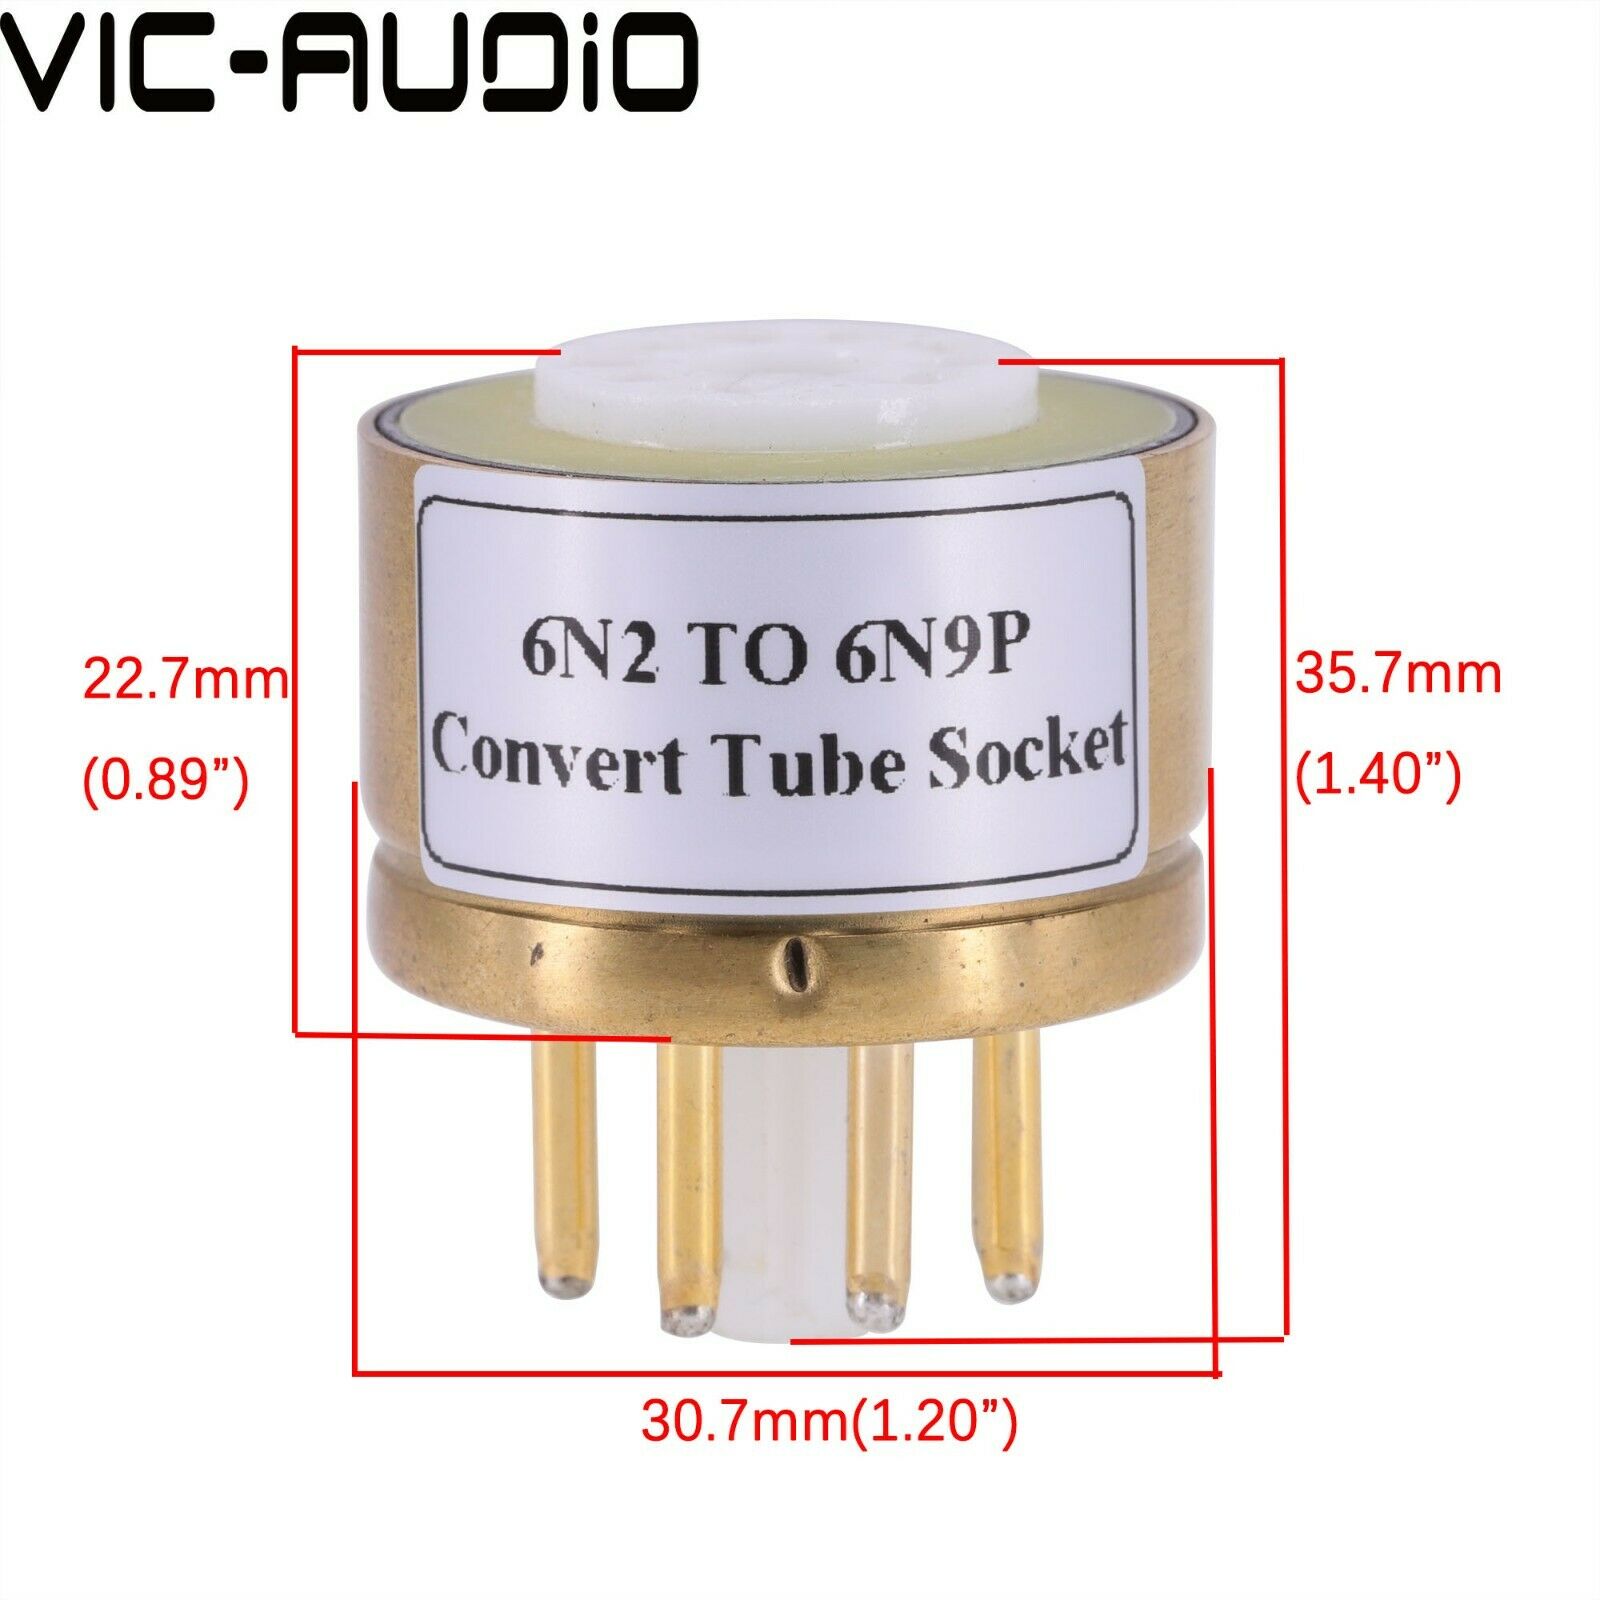 1PC E88CC 6922 6N2 TO 6N9P 6SN7 6N8P CV181 Vacuum Tube Adapter Socket Amplifier